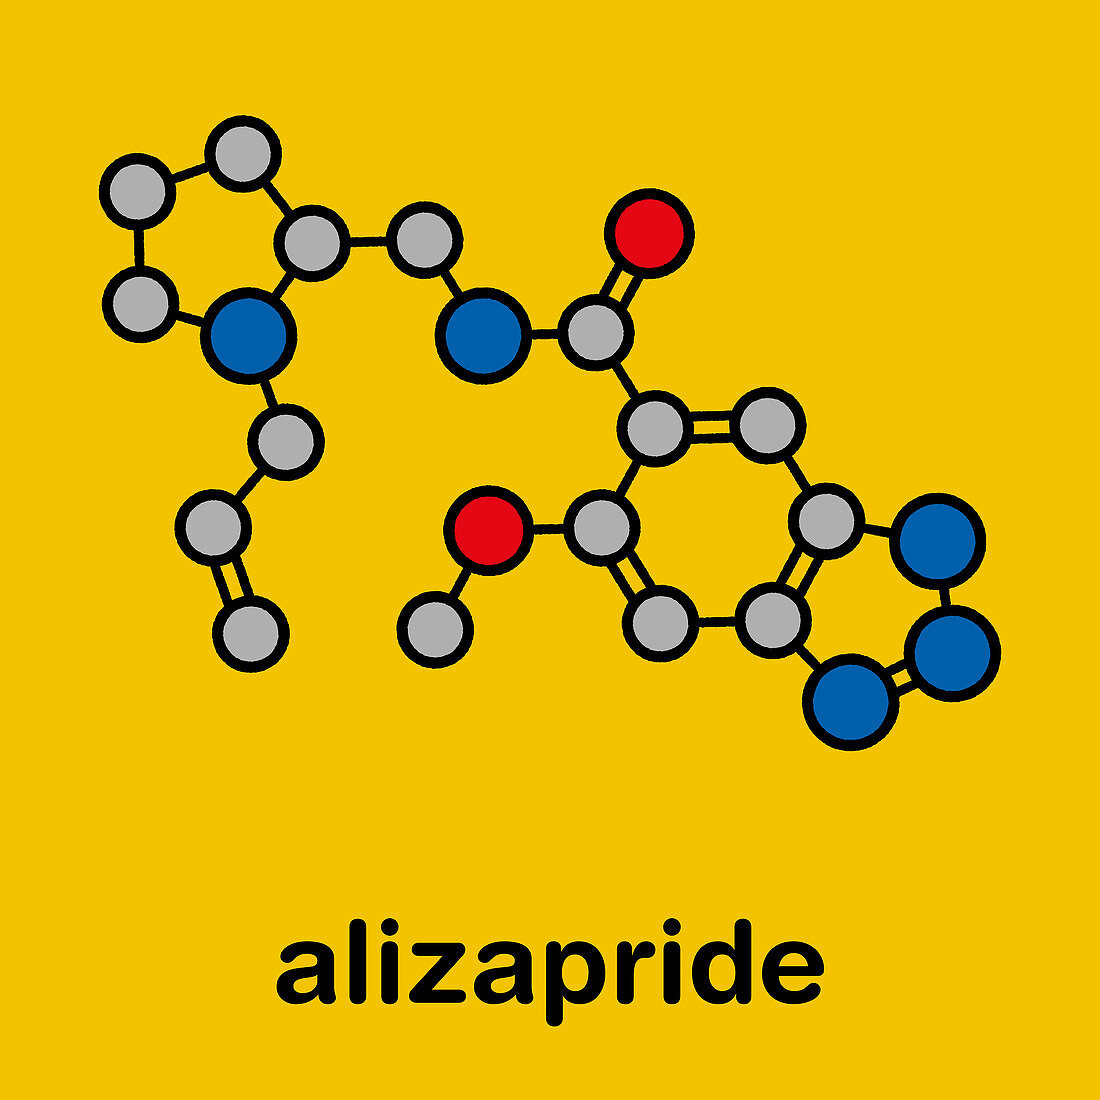 Alizapride antiemetic drug molecule, illustration